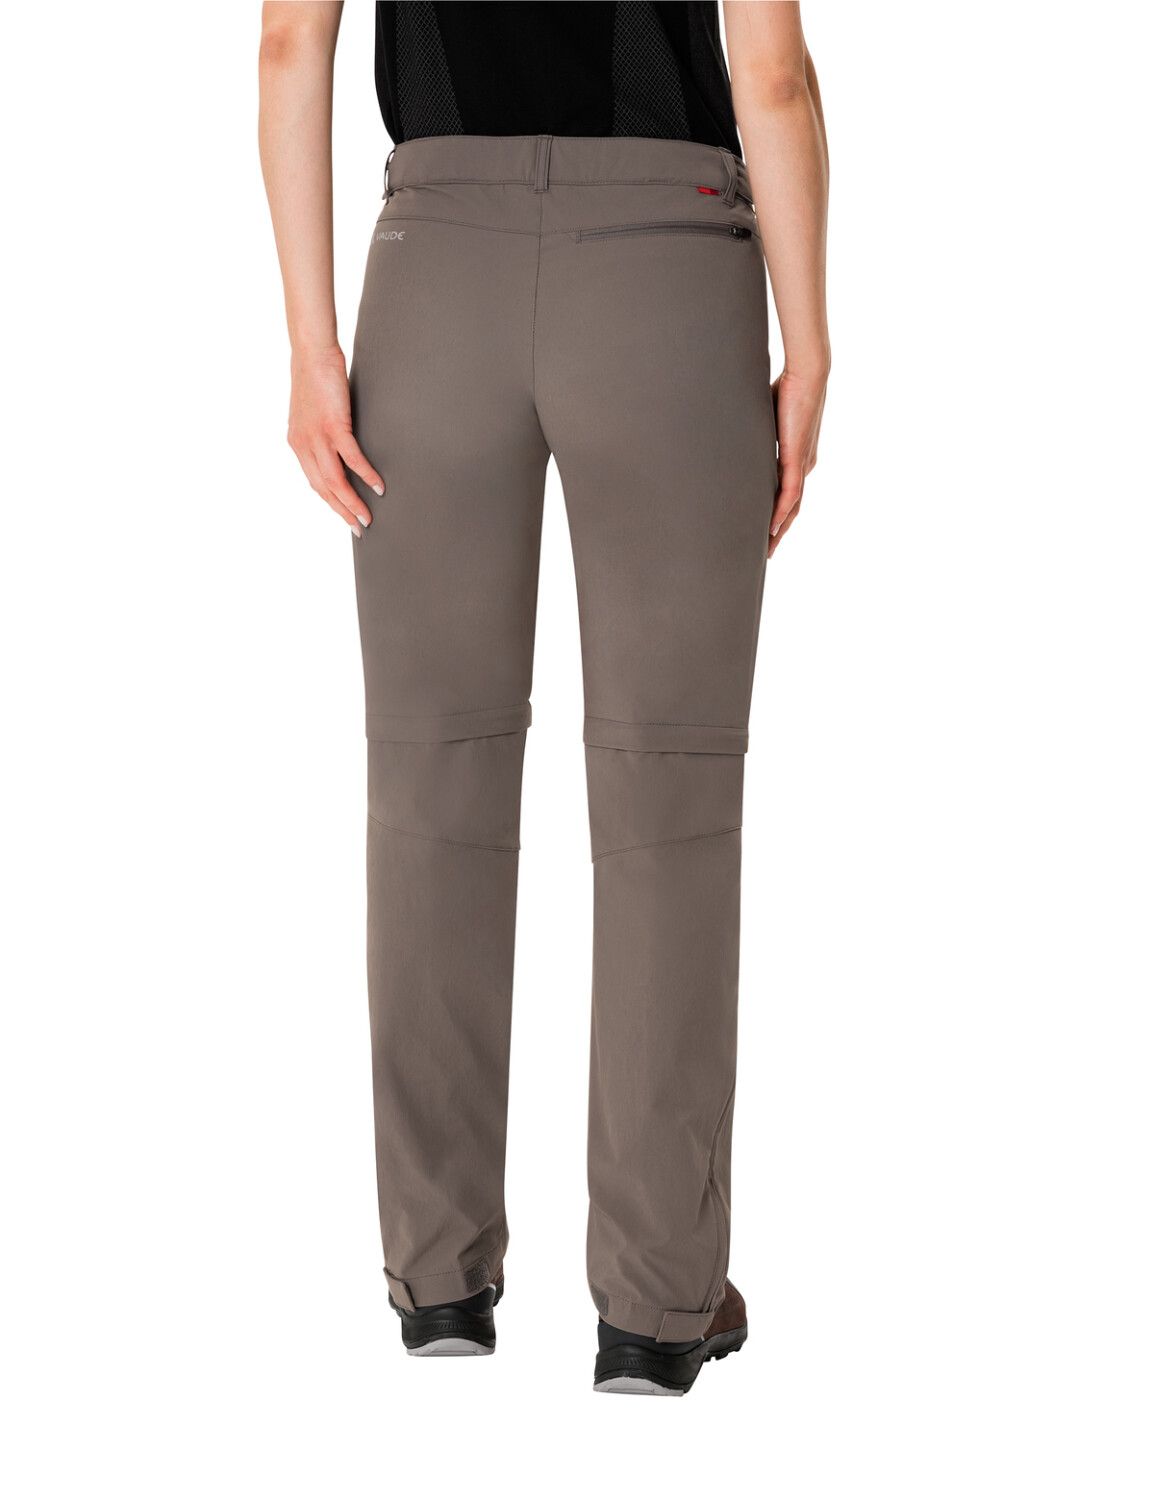 VAUDE Women's Farley Stretch ZO T-Zip Pants (Bild 43)